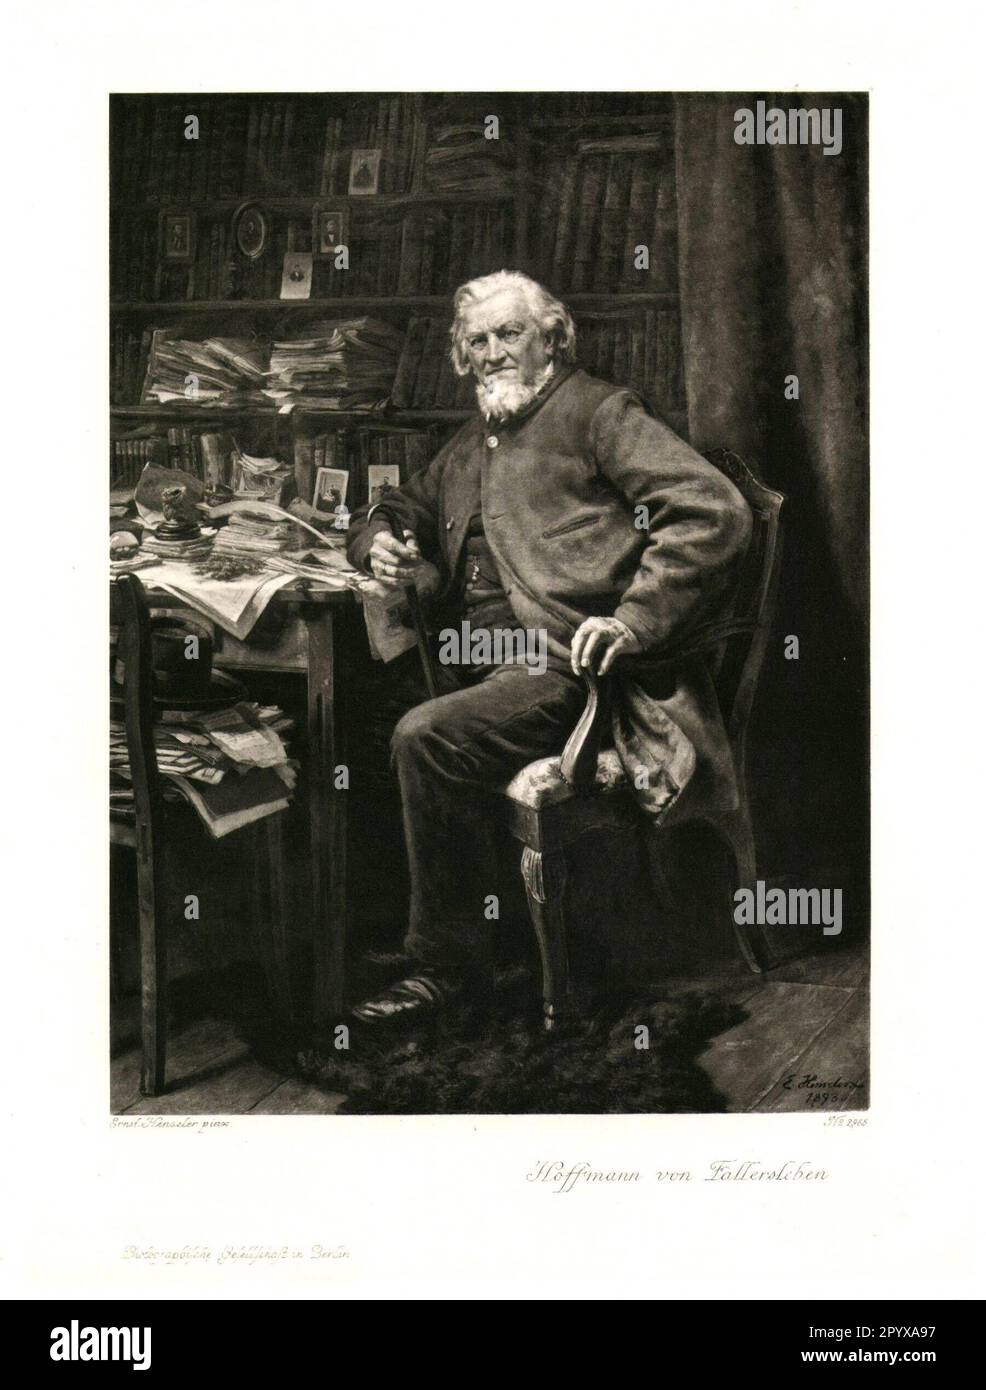 August Heinrich Hoffmann, bekannt als Hoffmann von Fallersleben, deutscher Dichter. Foto: Heliogravure, Corpus Imaginum, Hanfstaengl Collection. [Maschinelle Übersetzung] Stockfoto